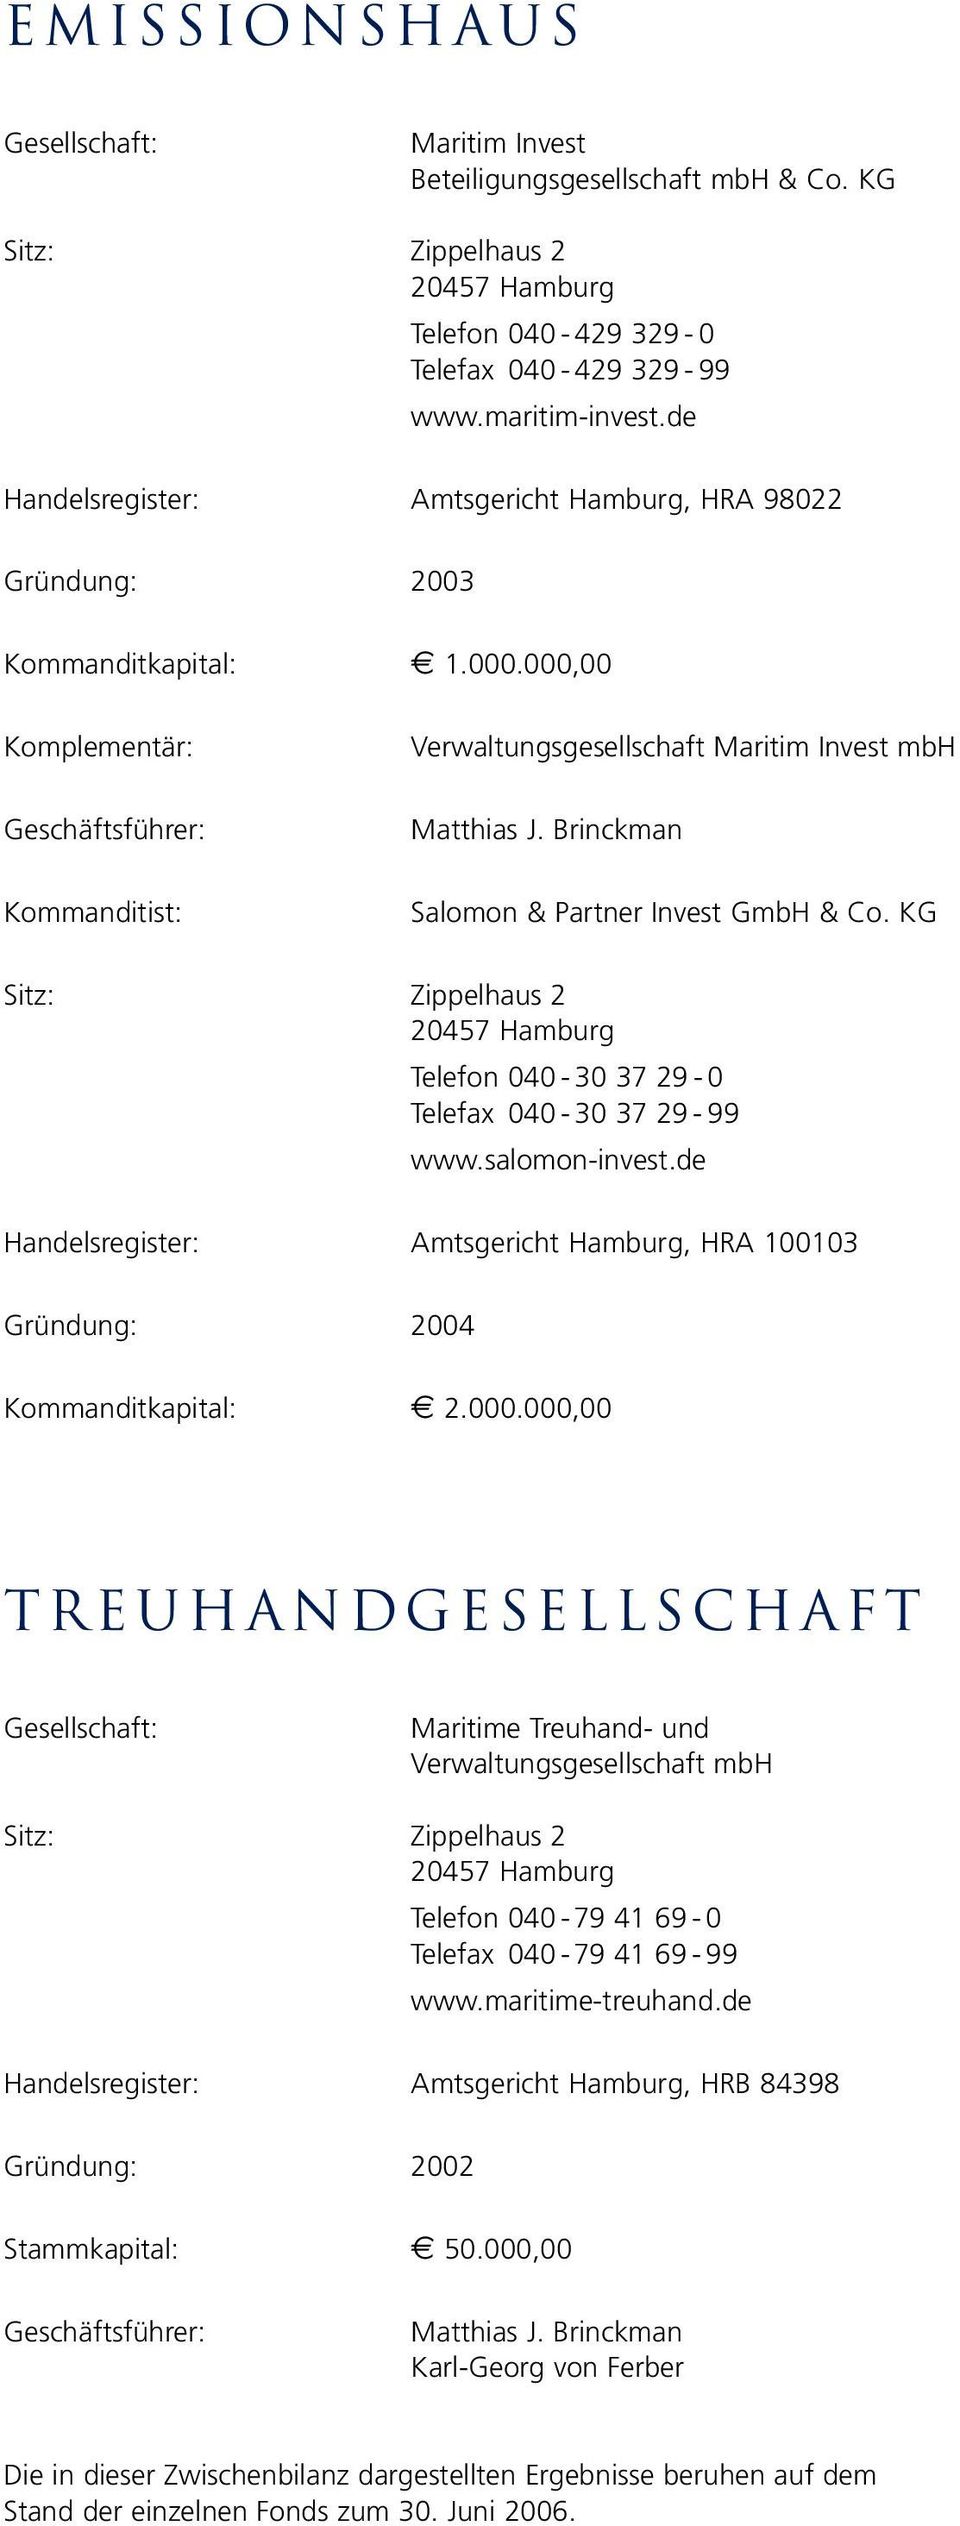 Brinckman Salomon & Partner Invest GmbH & Co. KG Sitz: Zippelhaus 2 20457 Hamburg Telefon 040-30 37 29-0 Telefax 040-30 37 29-99 www.salomon-invest.